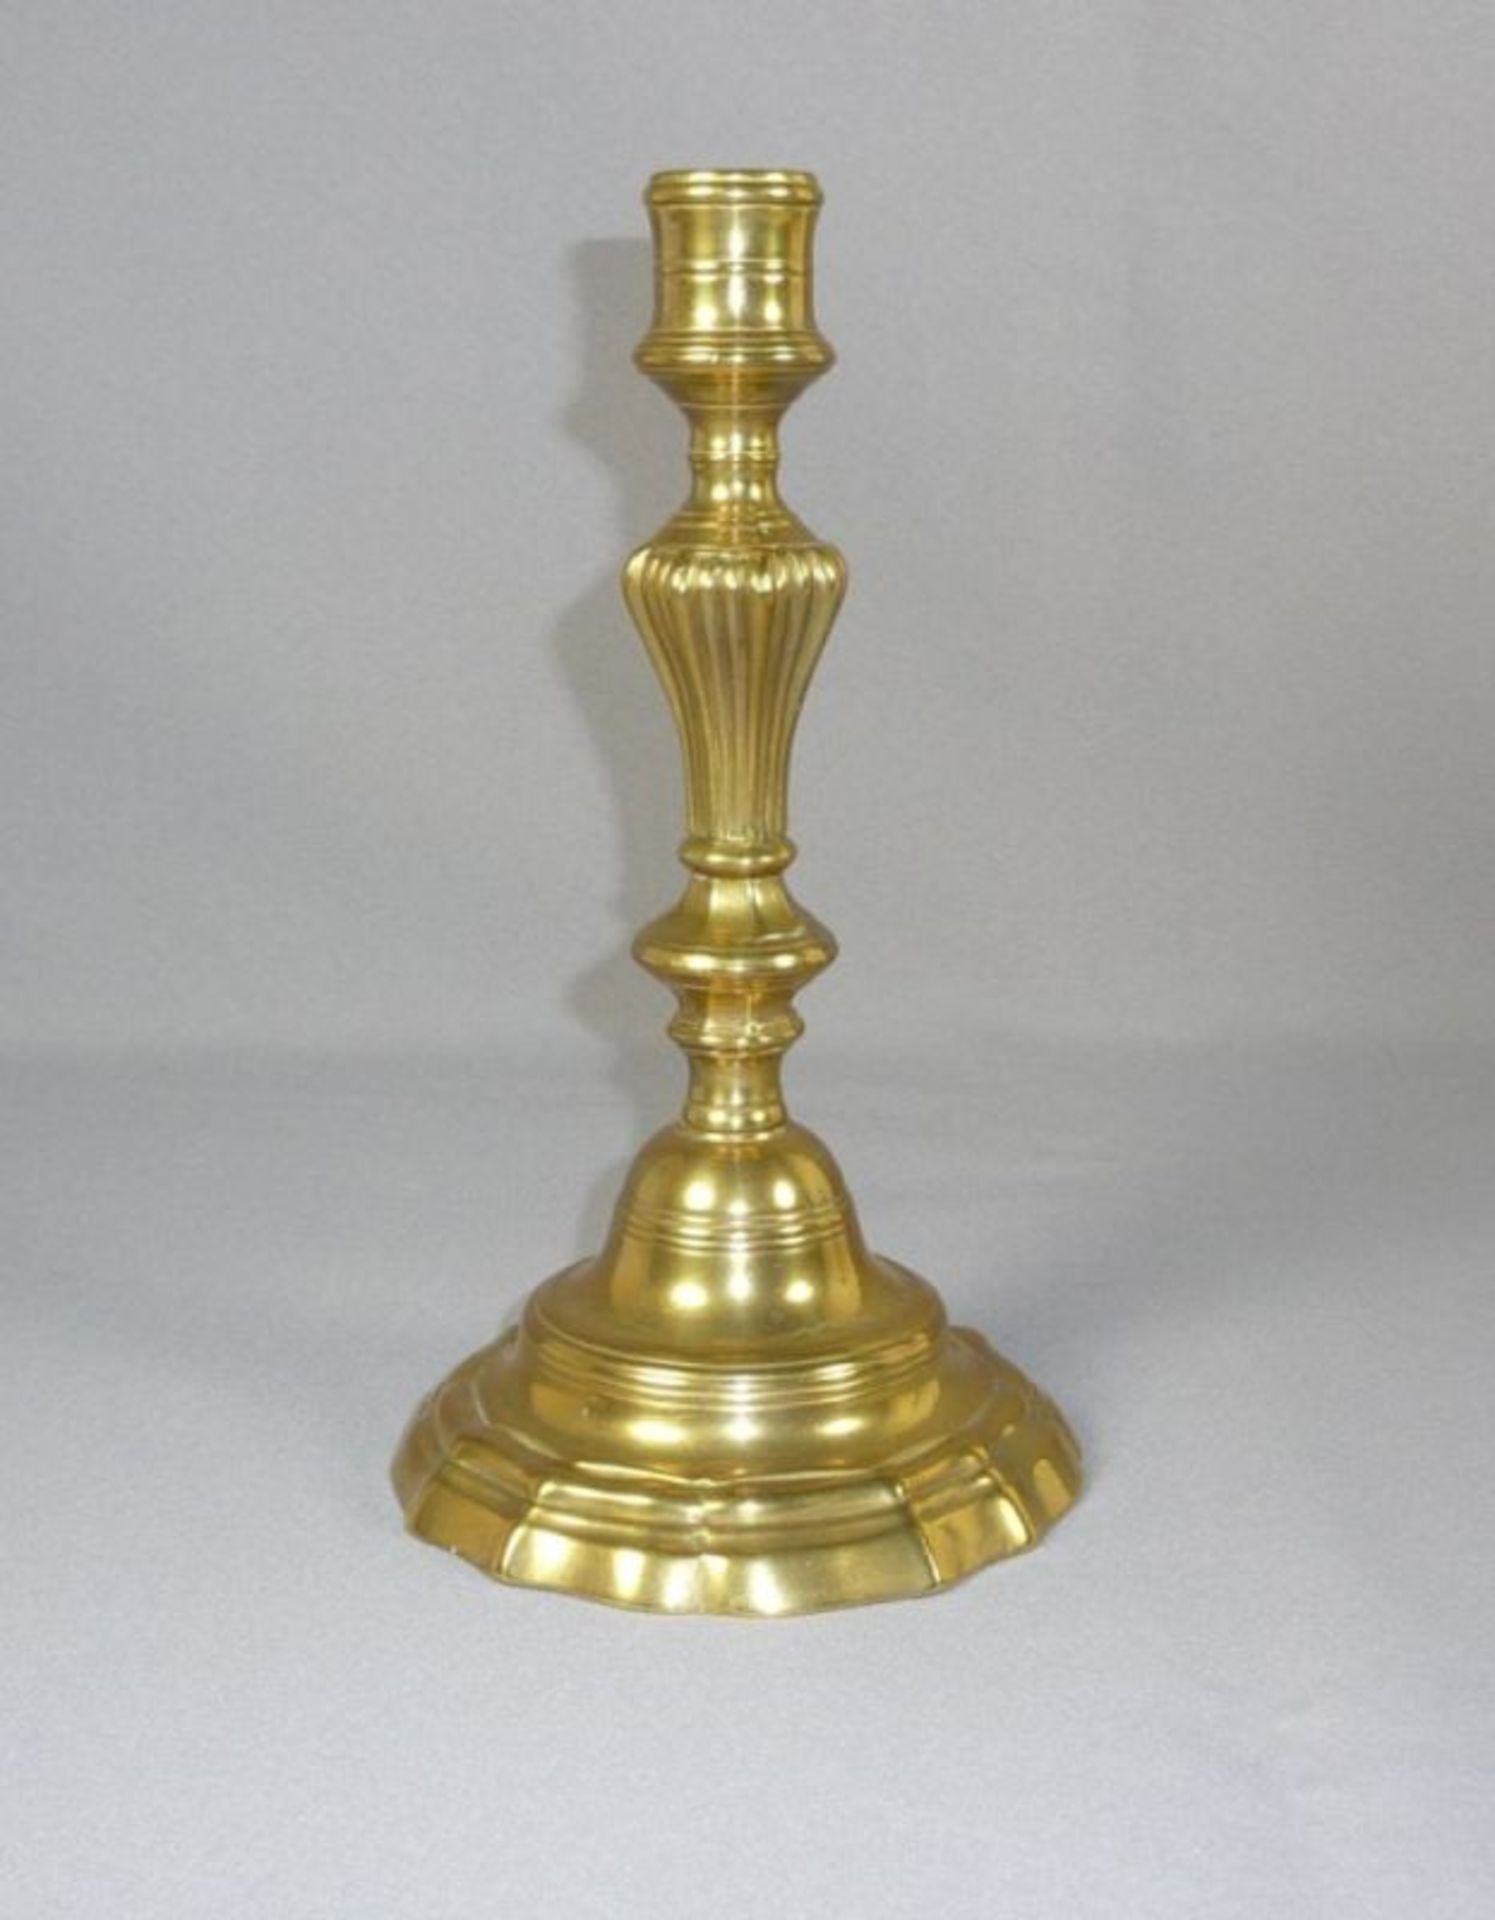 Baroque candlestick18th C.Brass. H. 24 cm.Barocker TafelleuchterM. 18. Jh.Vielpassiger geschweifter,